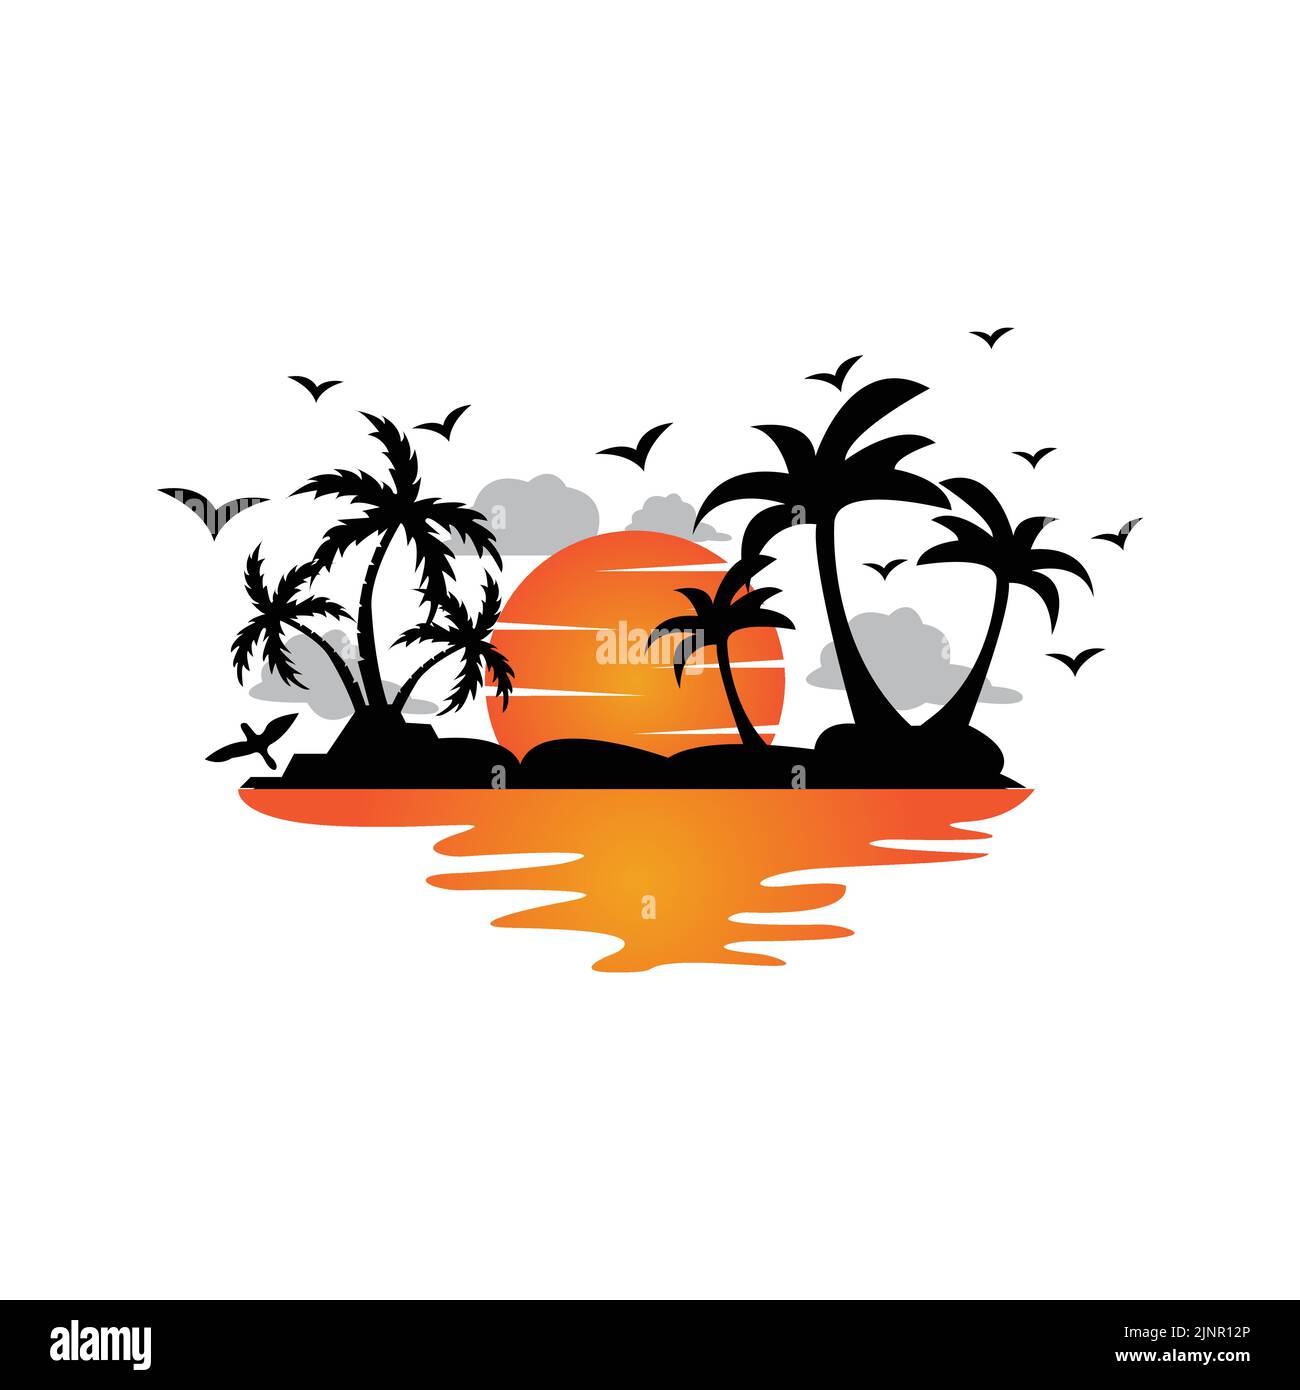 vector Beach Logo Vorlage mit Sonnenuntergang, Kokospalmen, Fischerbooten, Segelbooten und fliegenden Vögeln, ocean Waves, Retro Circle Design Konzept Stock Vektor